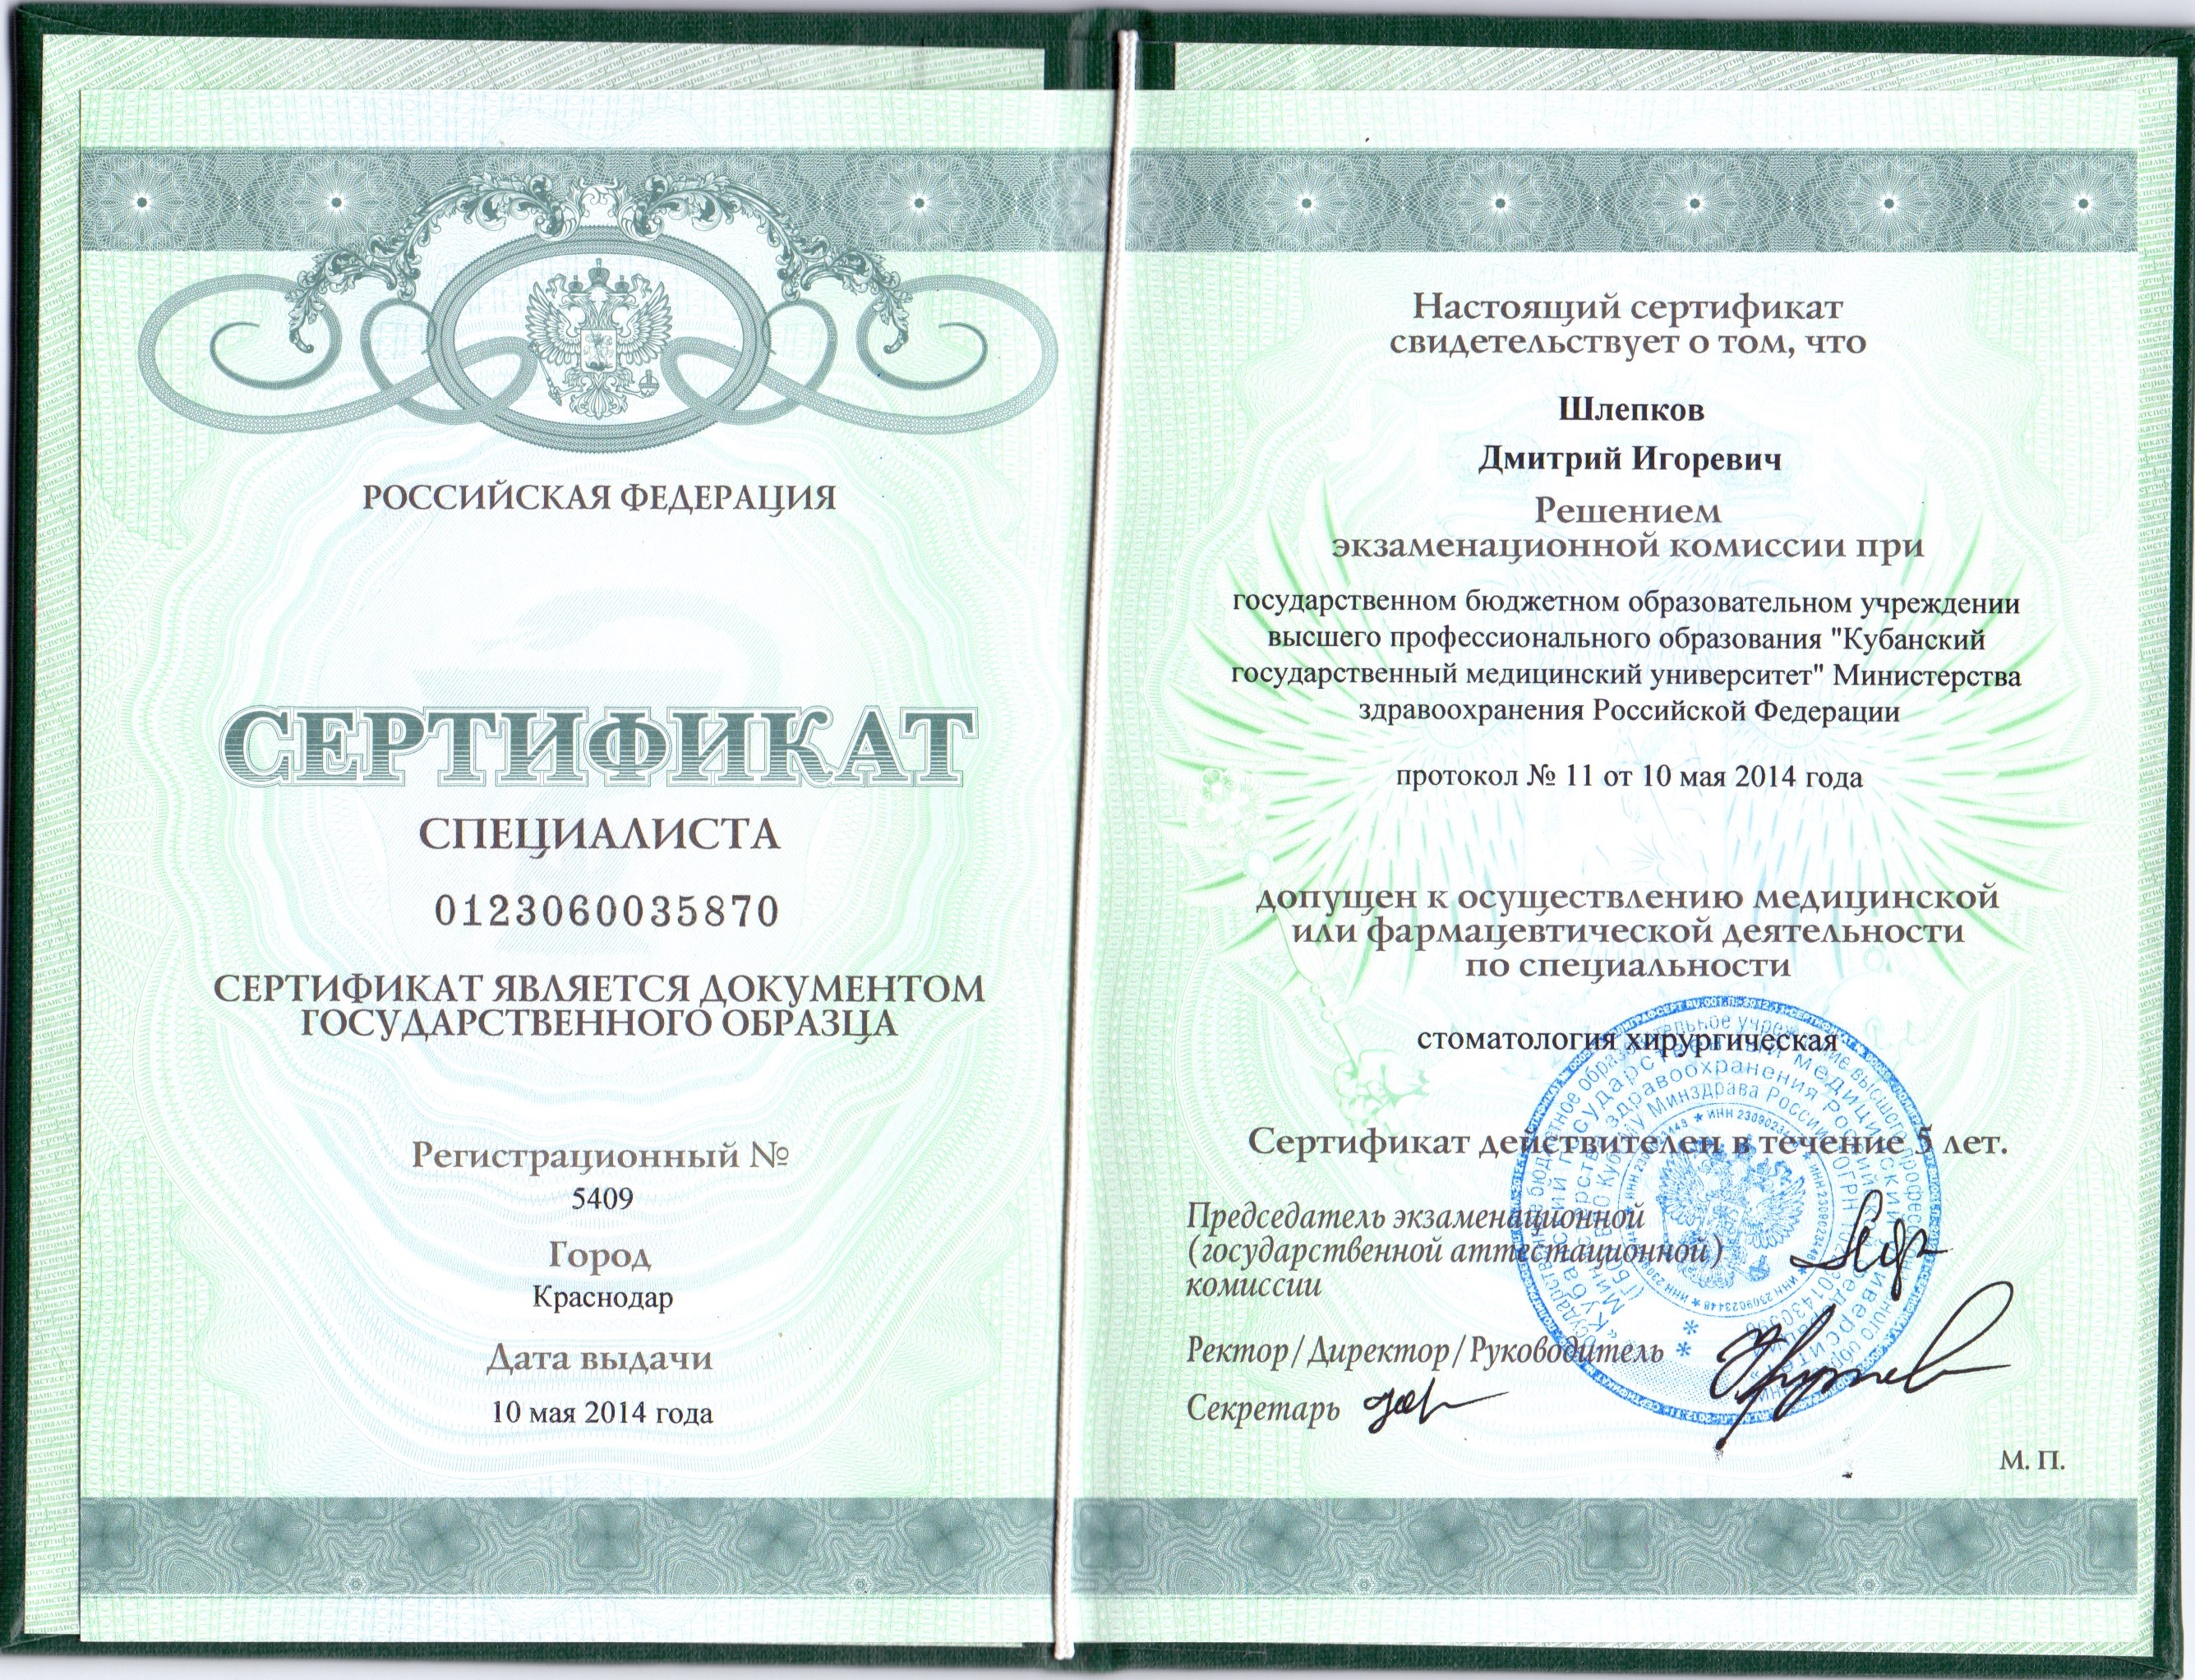 Сертификат по хирургической стоматологии.